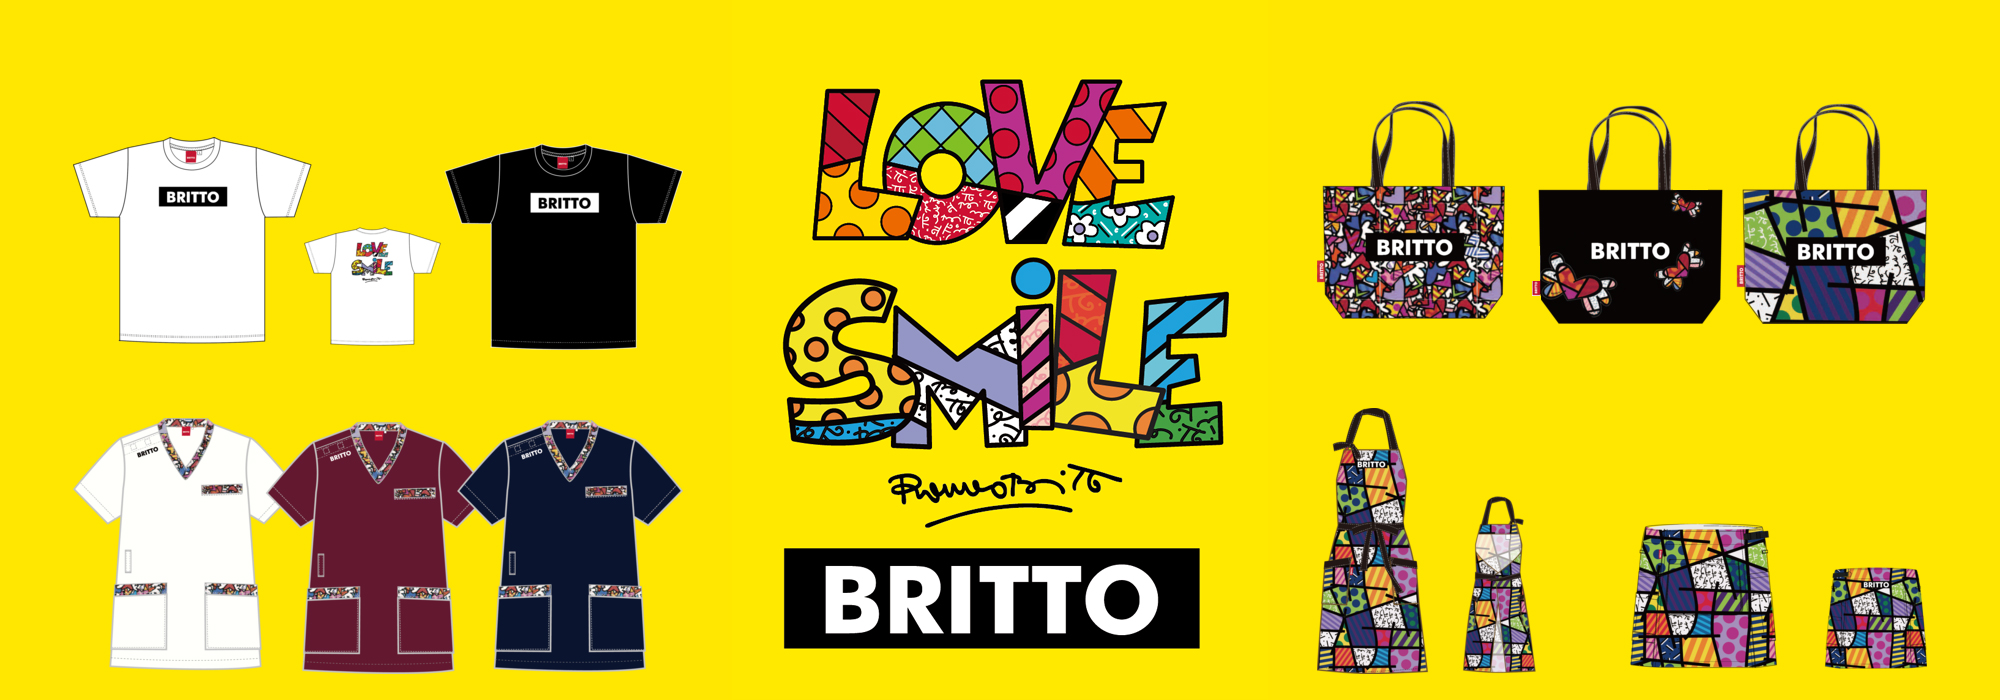 ポップ・アーティスト「ロメロ・ブリット」のアートを用いた新ブランド「BRITTO」